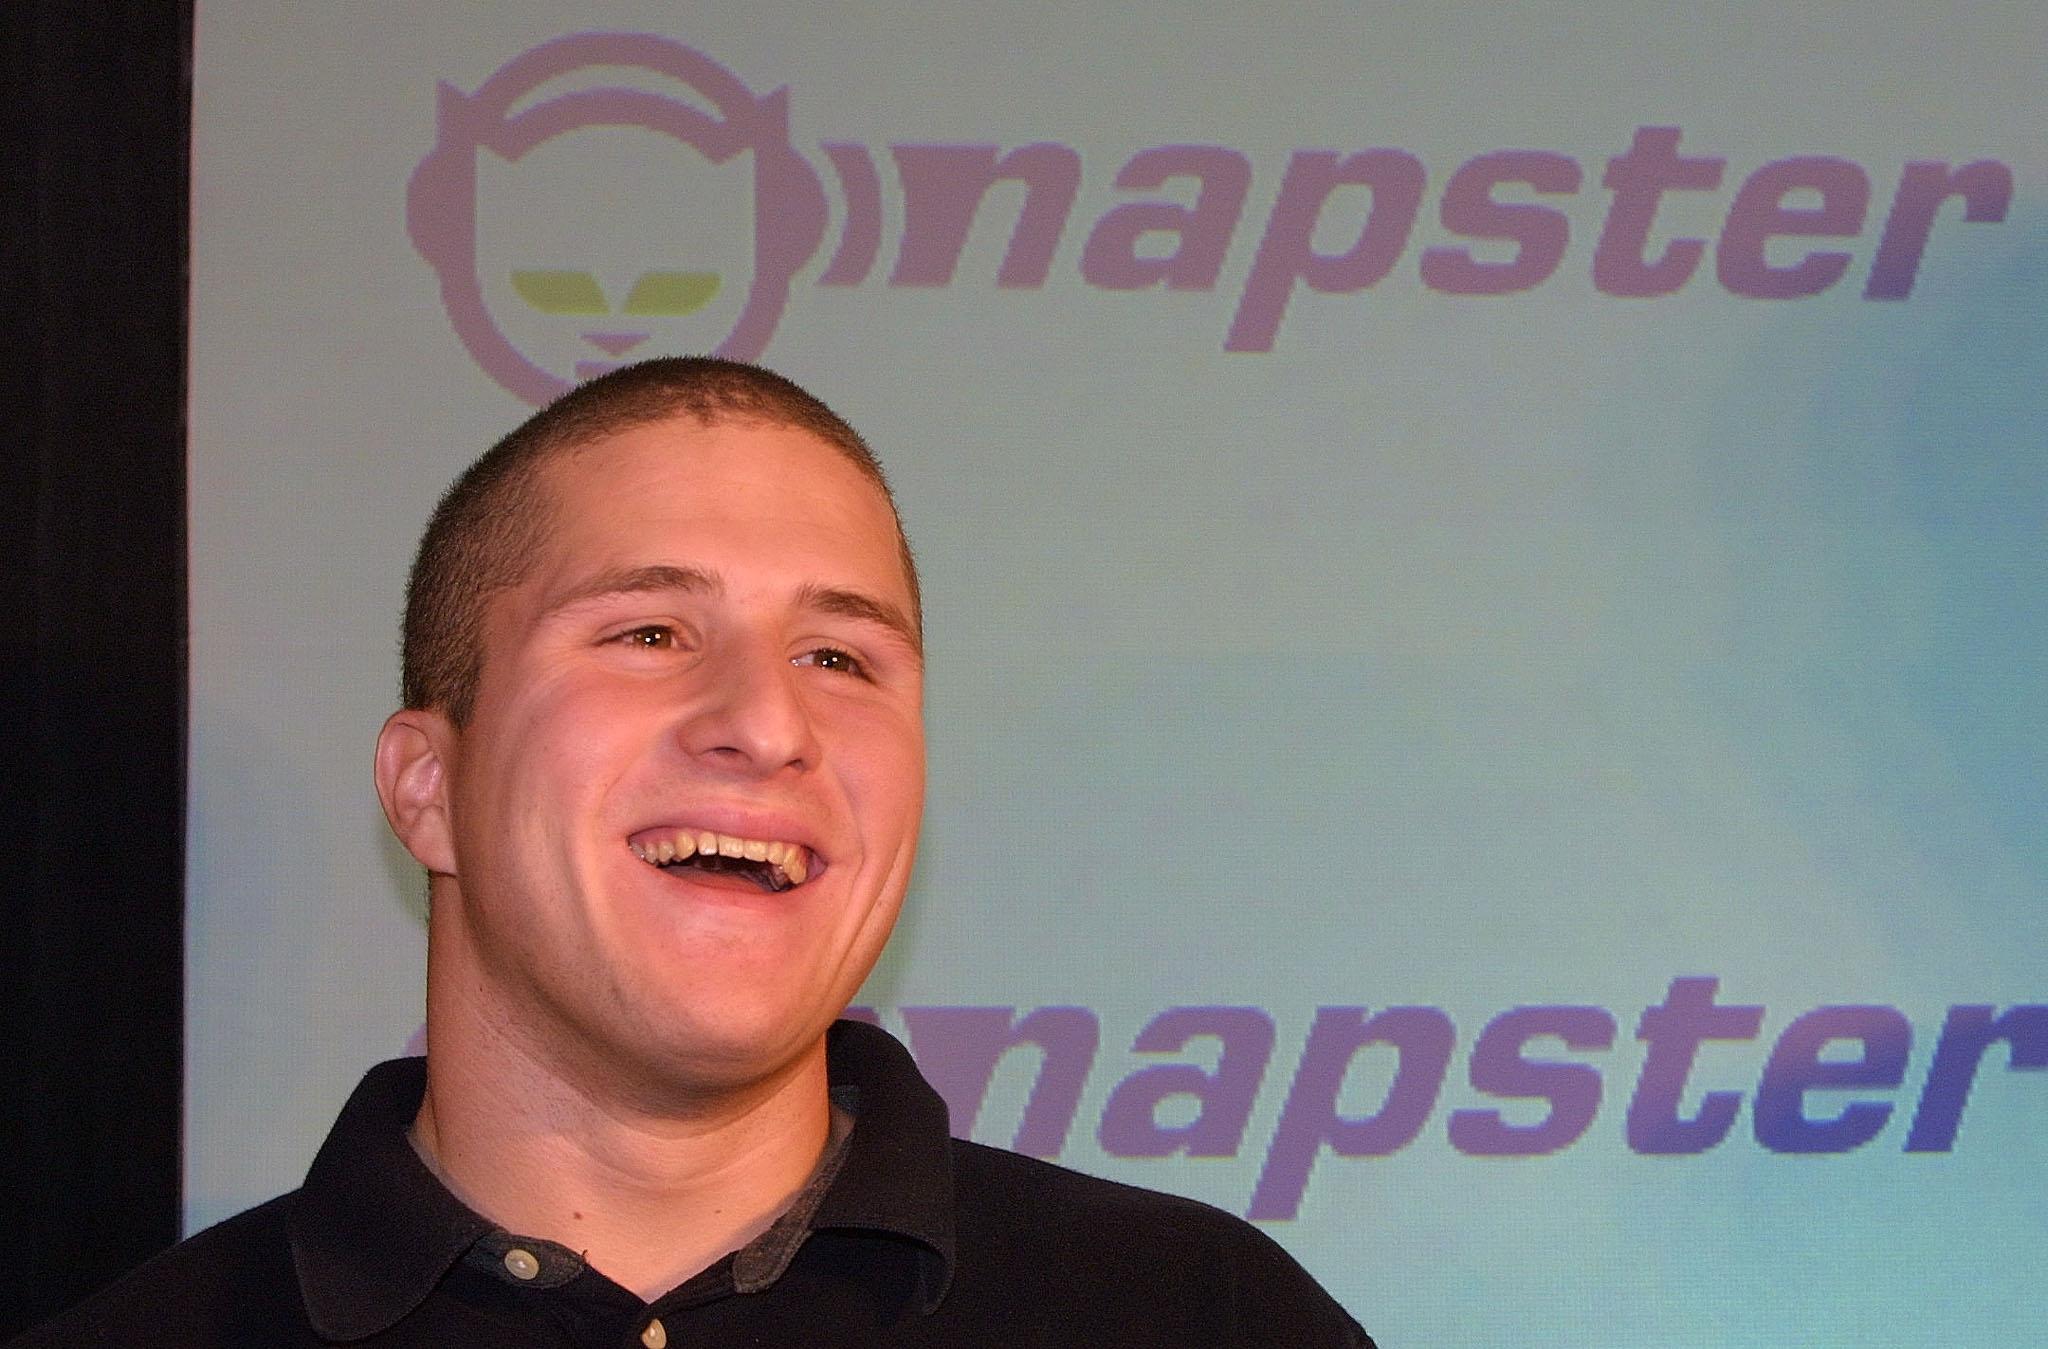 Shawn Fanning, fondateur du site de partage de fichiers Napster. [AFP - JOHN G. MABANGLO]